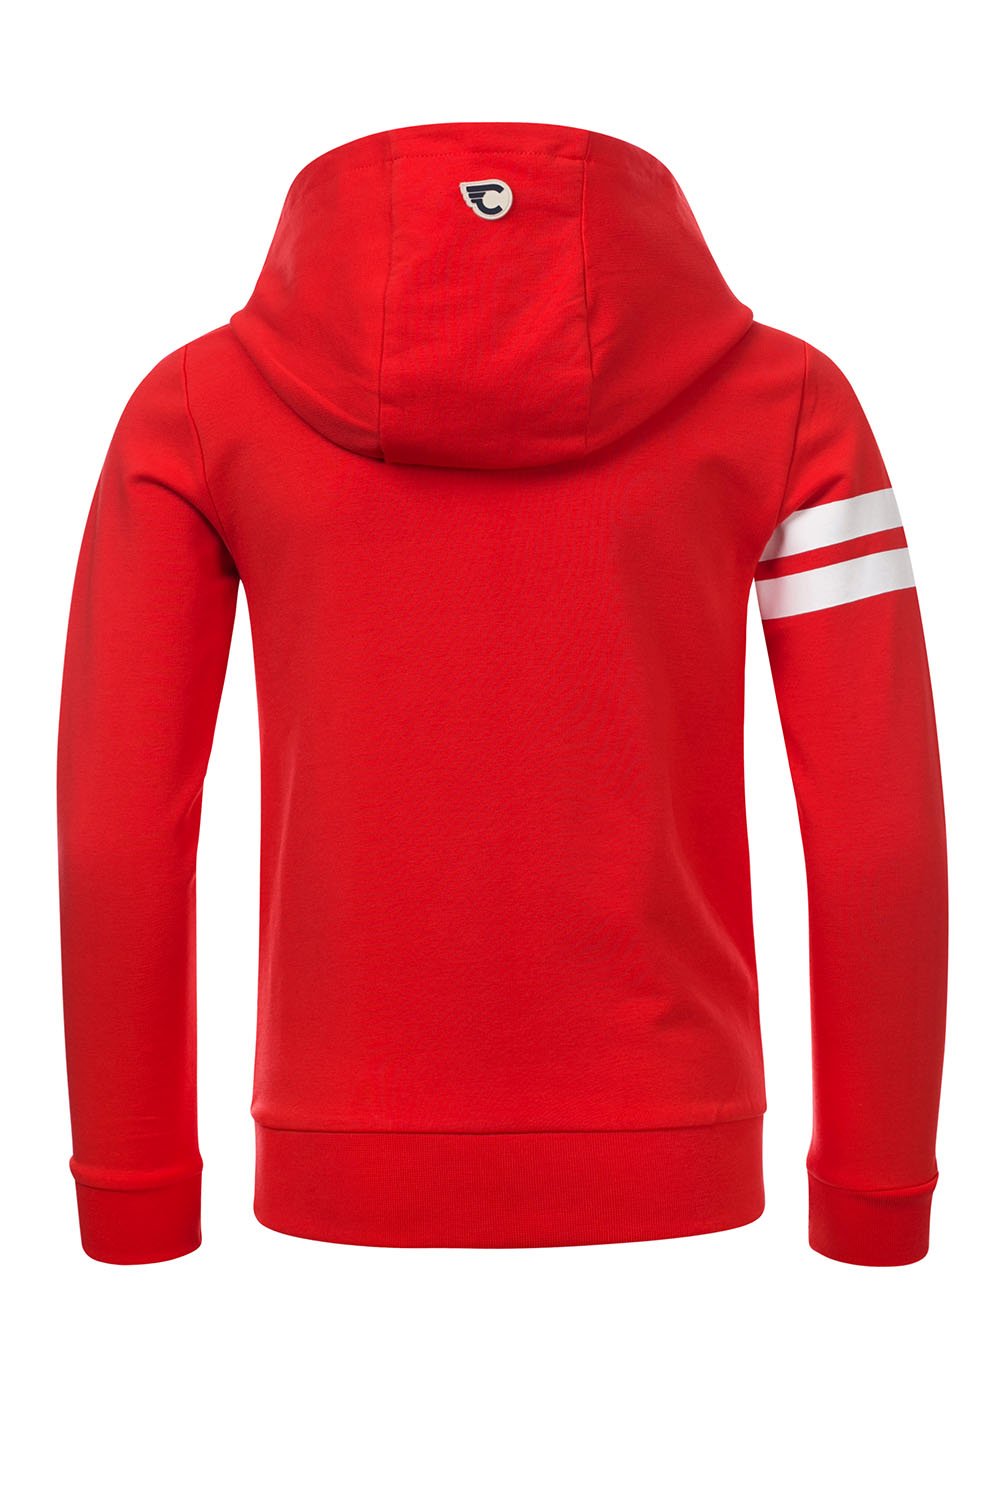 Jongens STEFAN hoody sweater with lycra van Common Heroes in de kleur Pepper in maat 146/152.